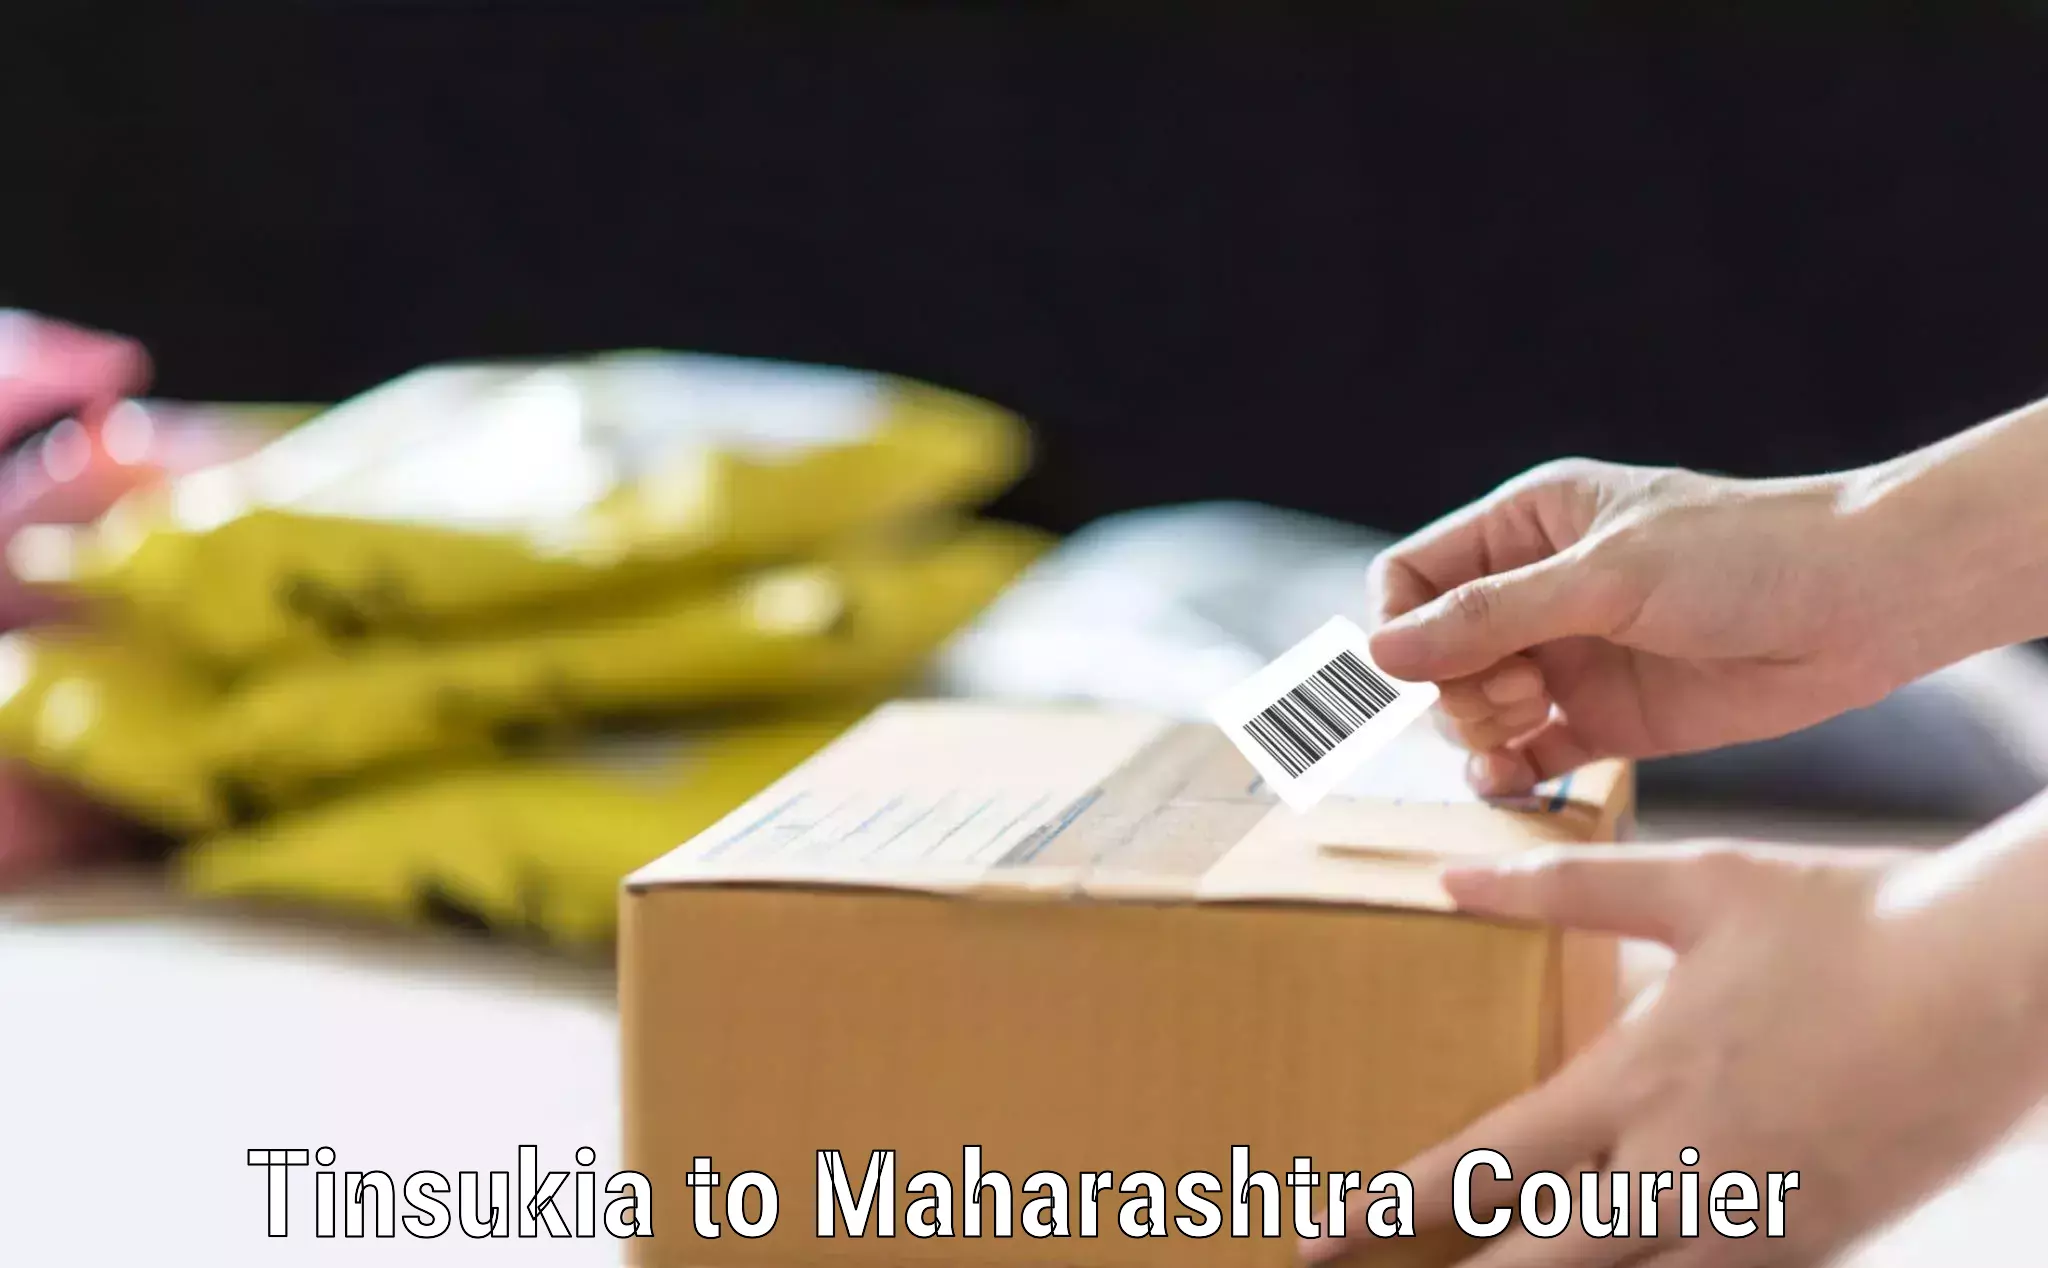 Baggage shipping schedule Tinsukia to Maharashtra